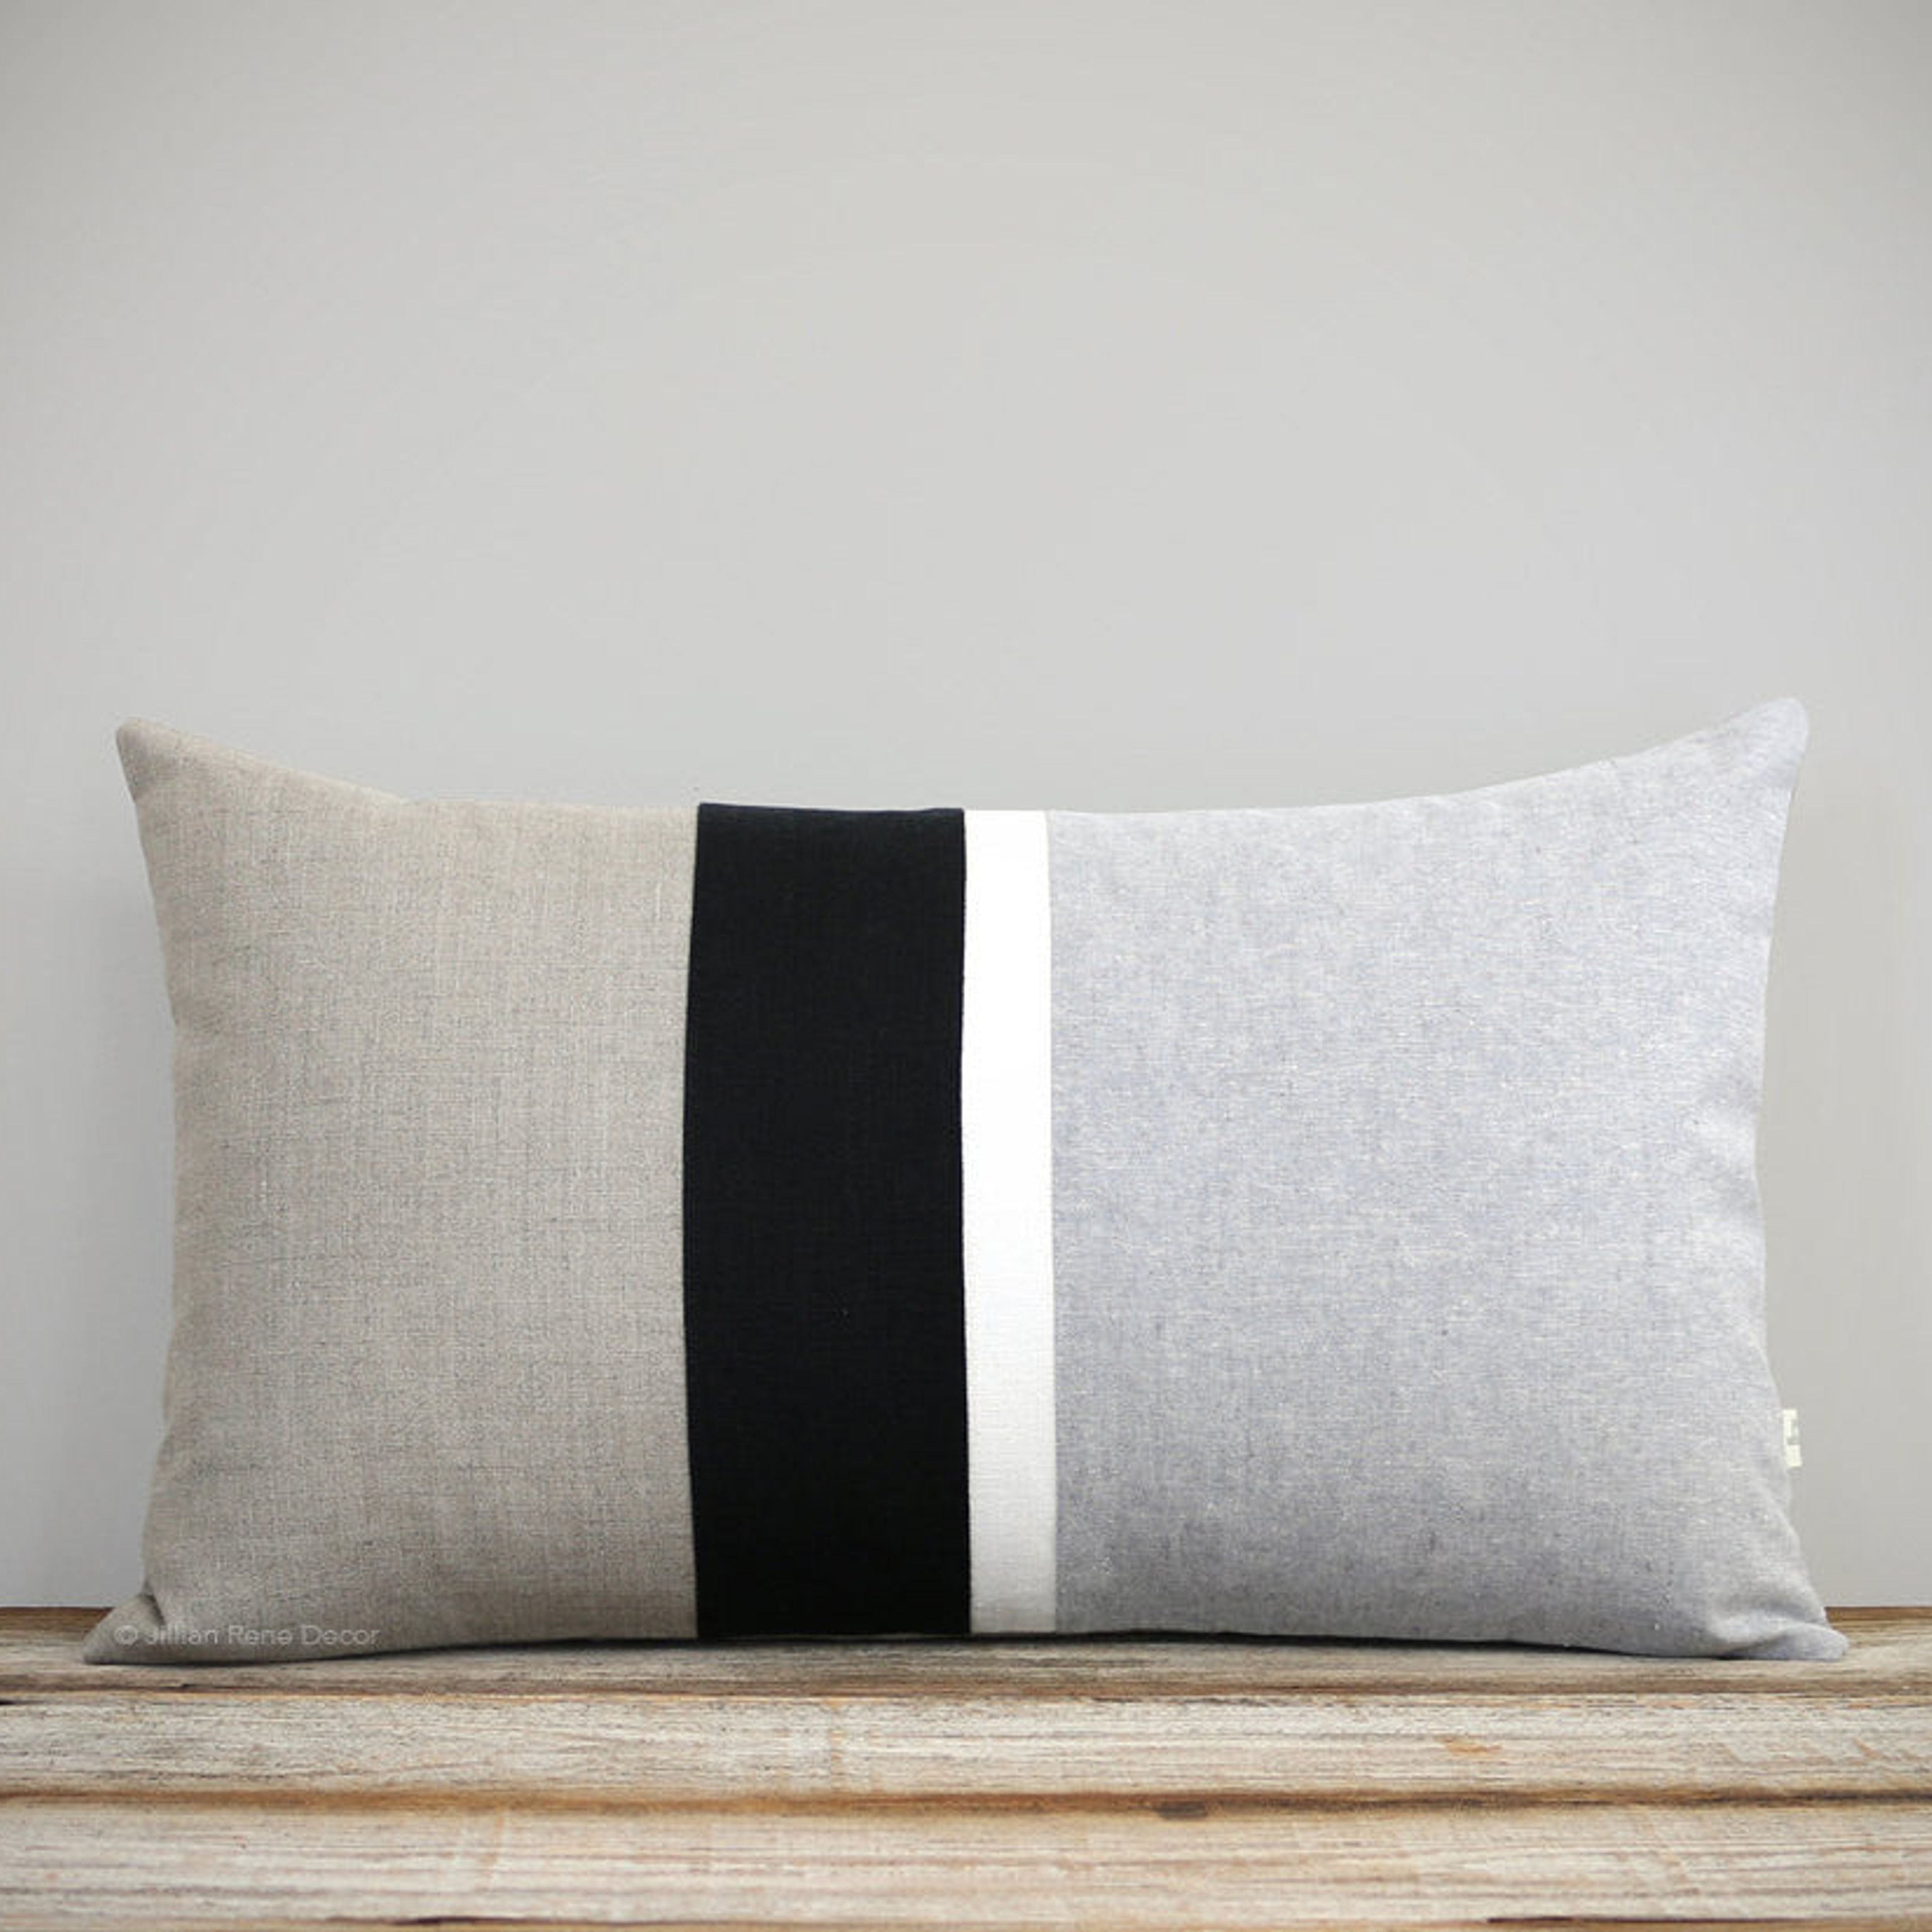 Chambray Striped Pillow - Black